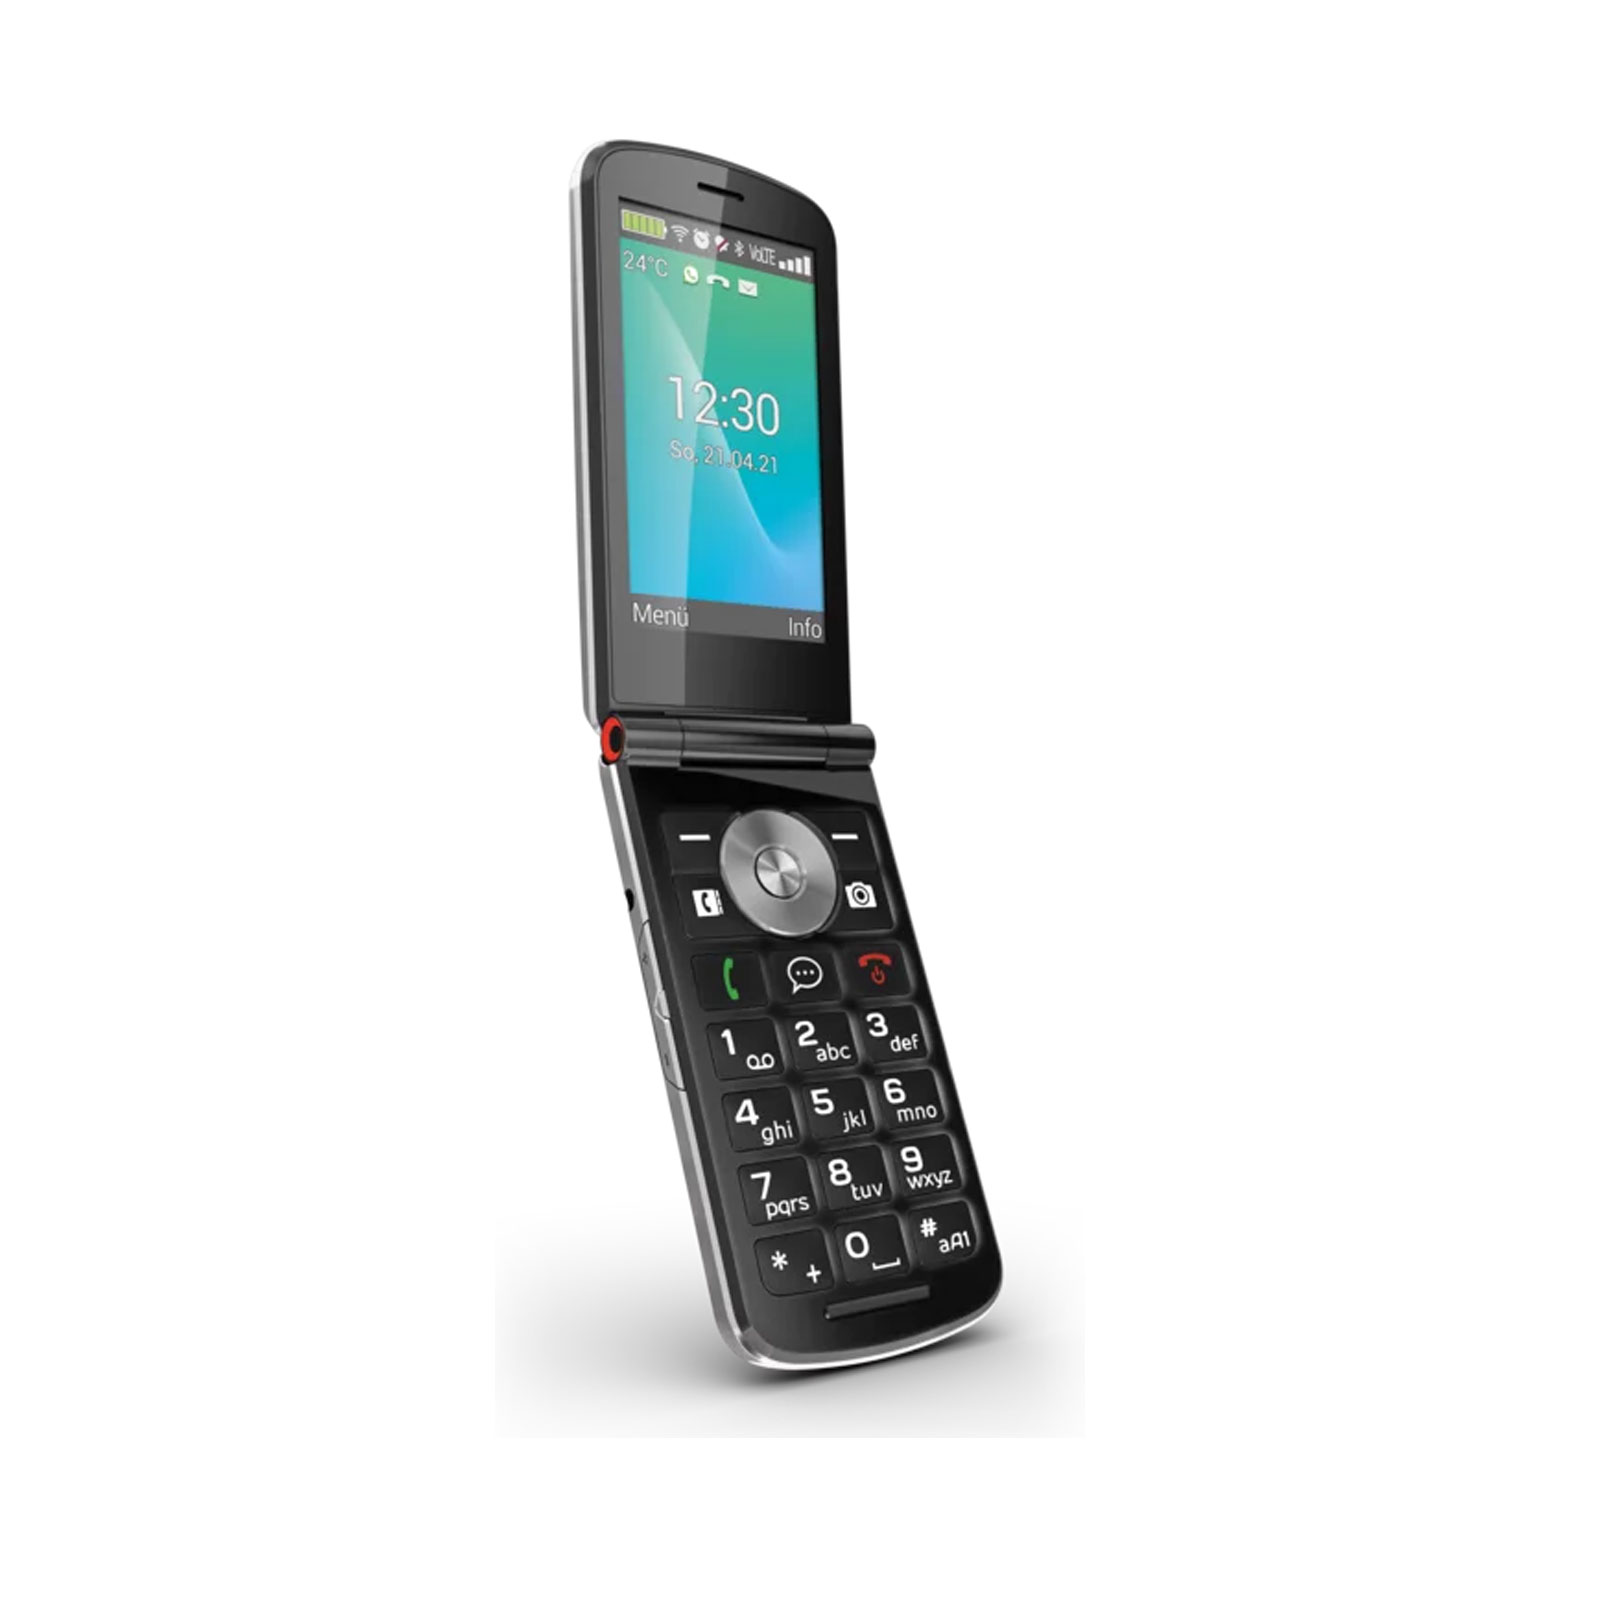 EMPORIA Touch Smart 2 schwarz Handy